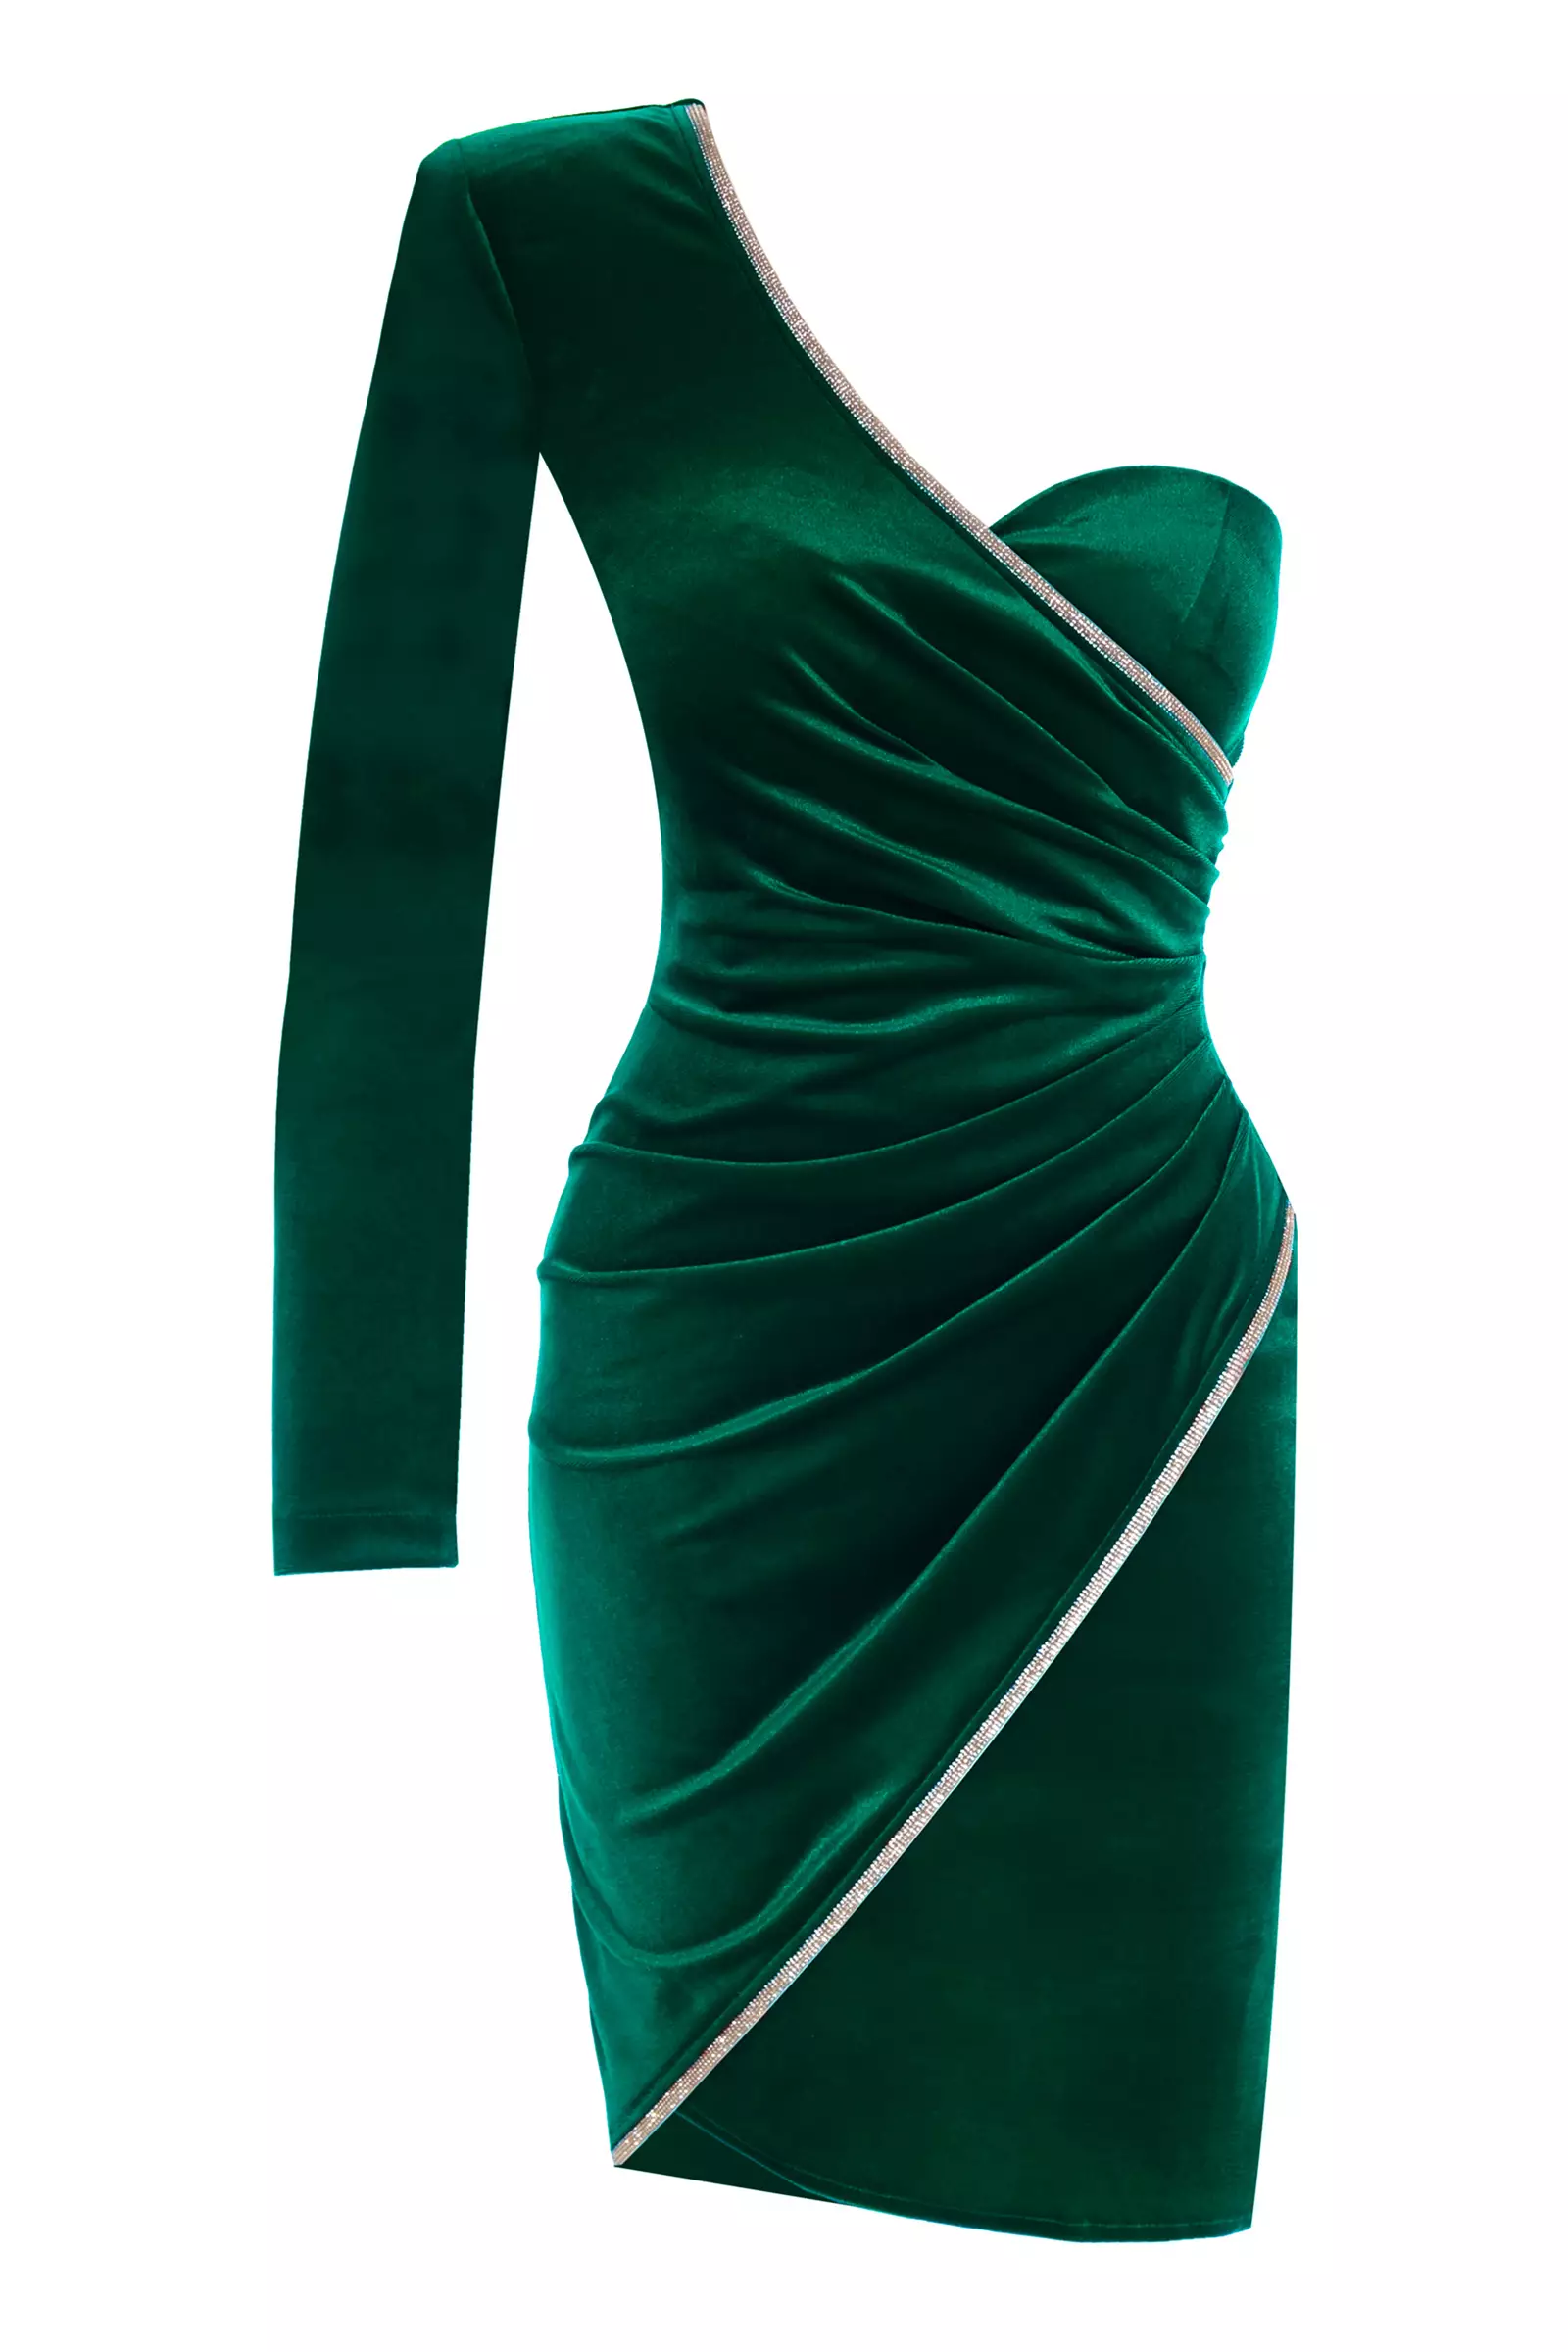 Green velvet one arm mini dress